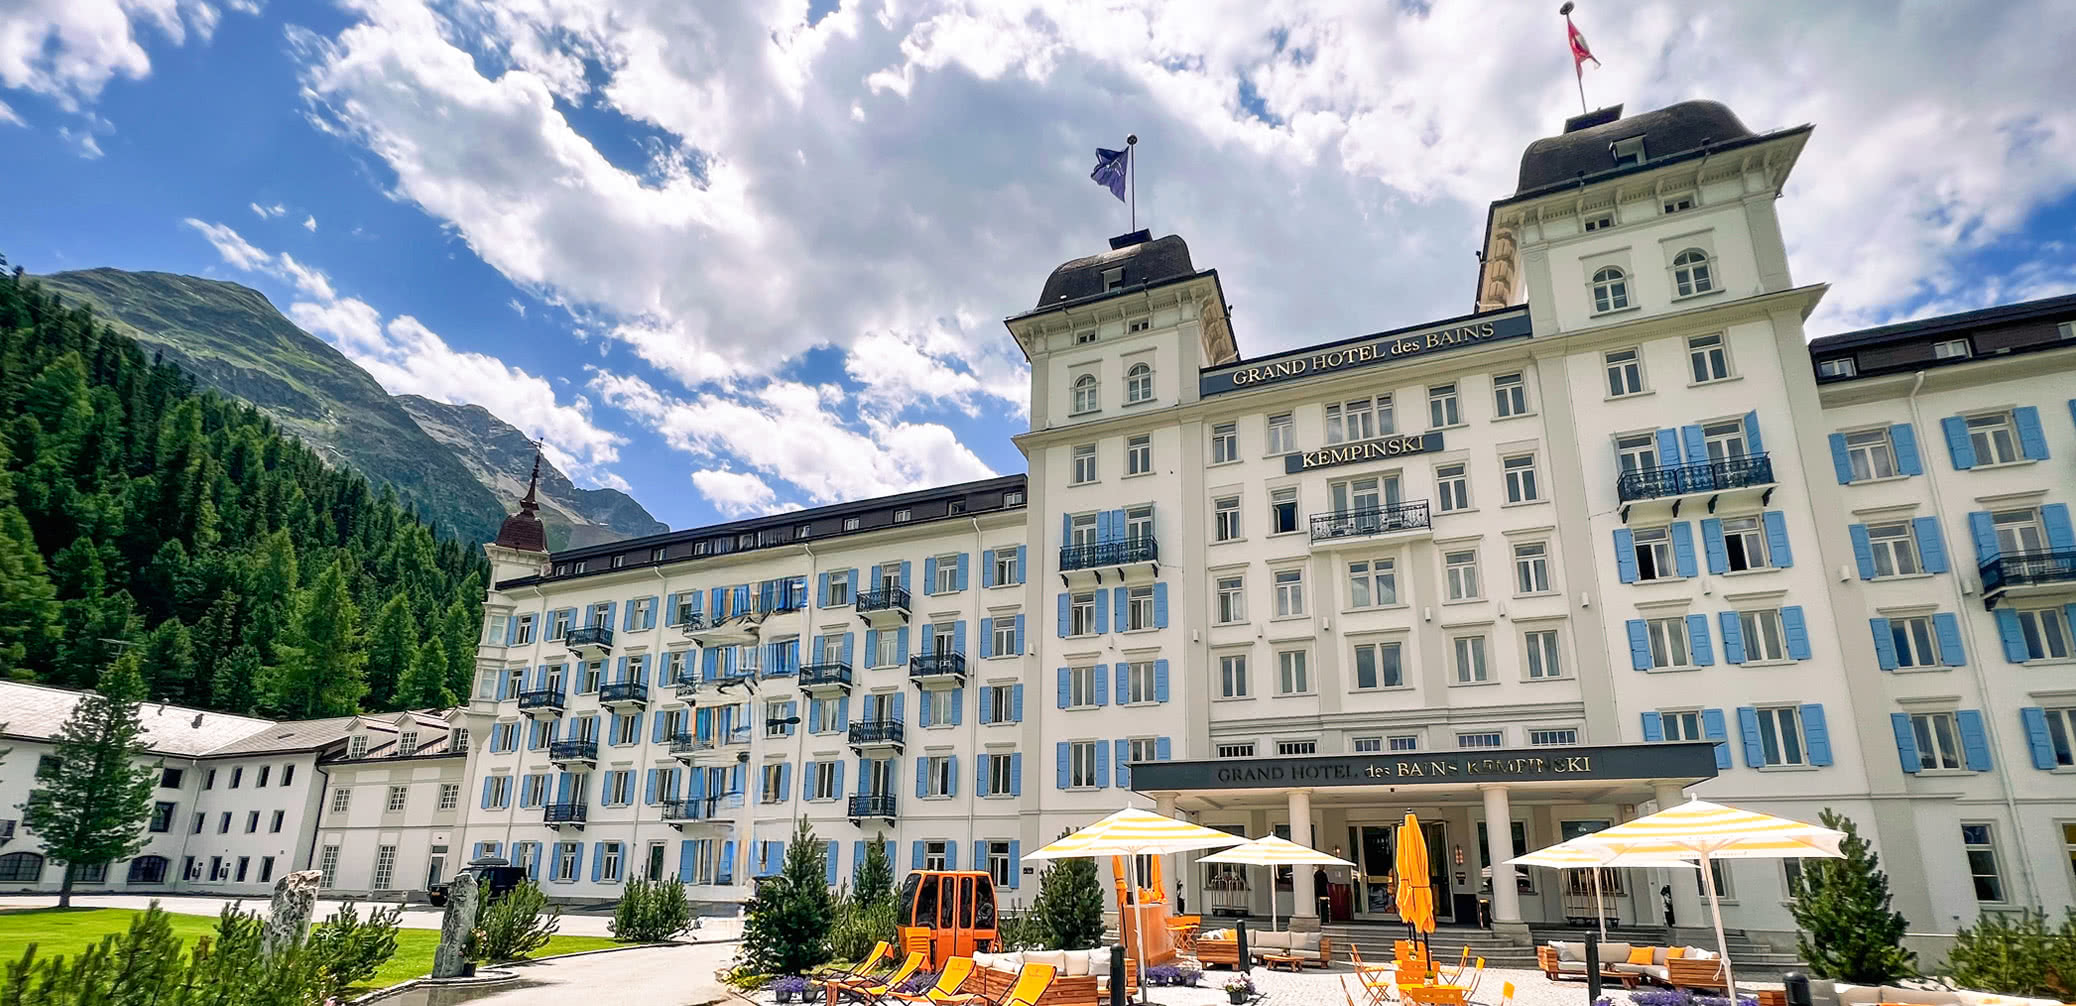 Review: Grand Hotel Des Bains Kempinski St. Moritz